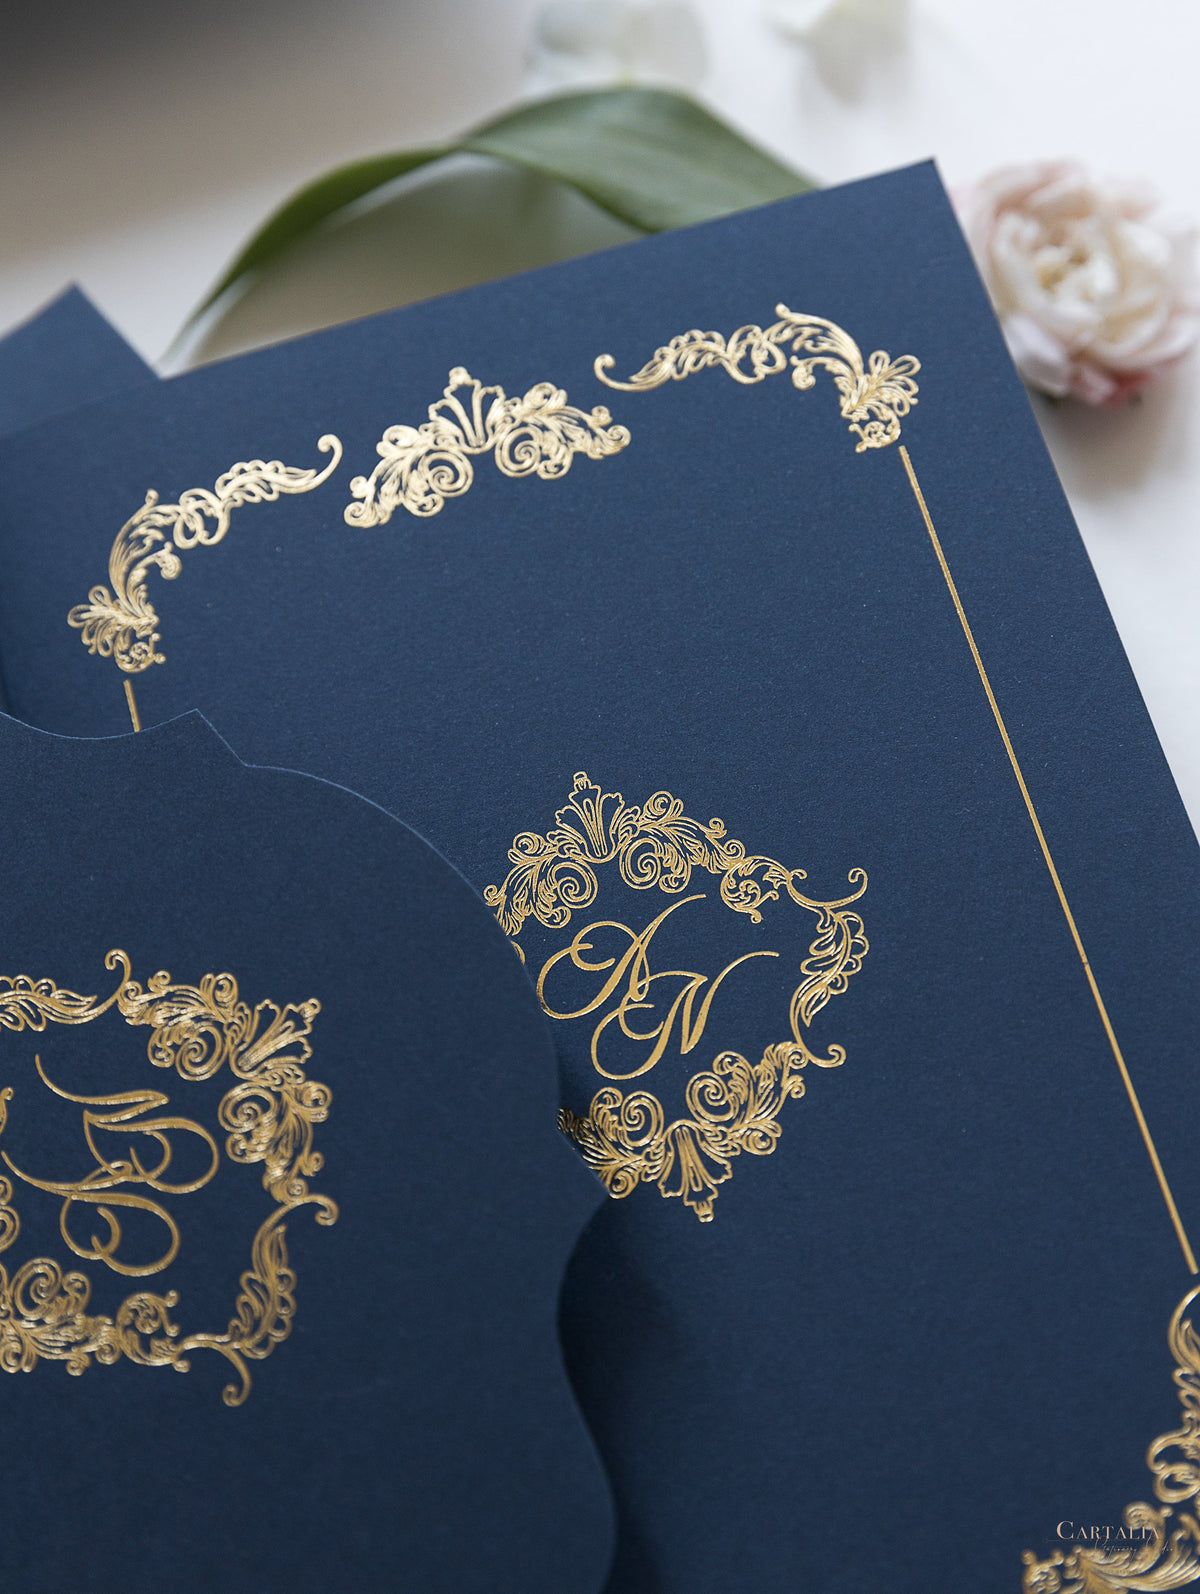 Suite de bolsillo clásica de lujo azul marino y dorado con lámina dorada y boda con 3 inserciones triples